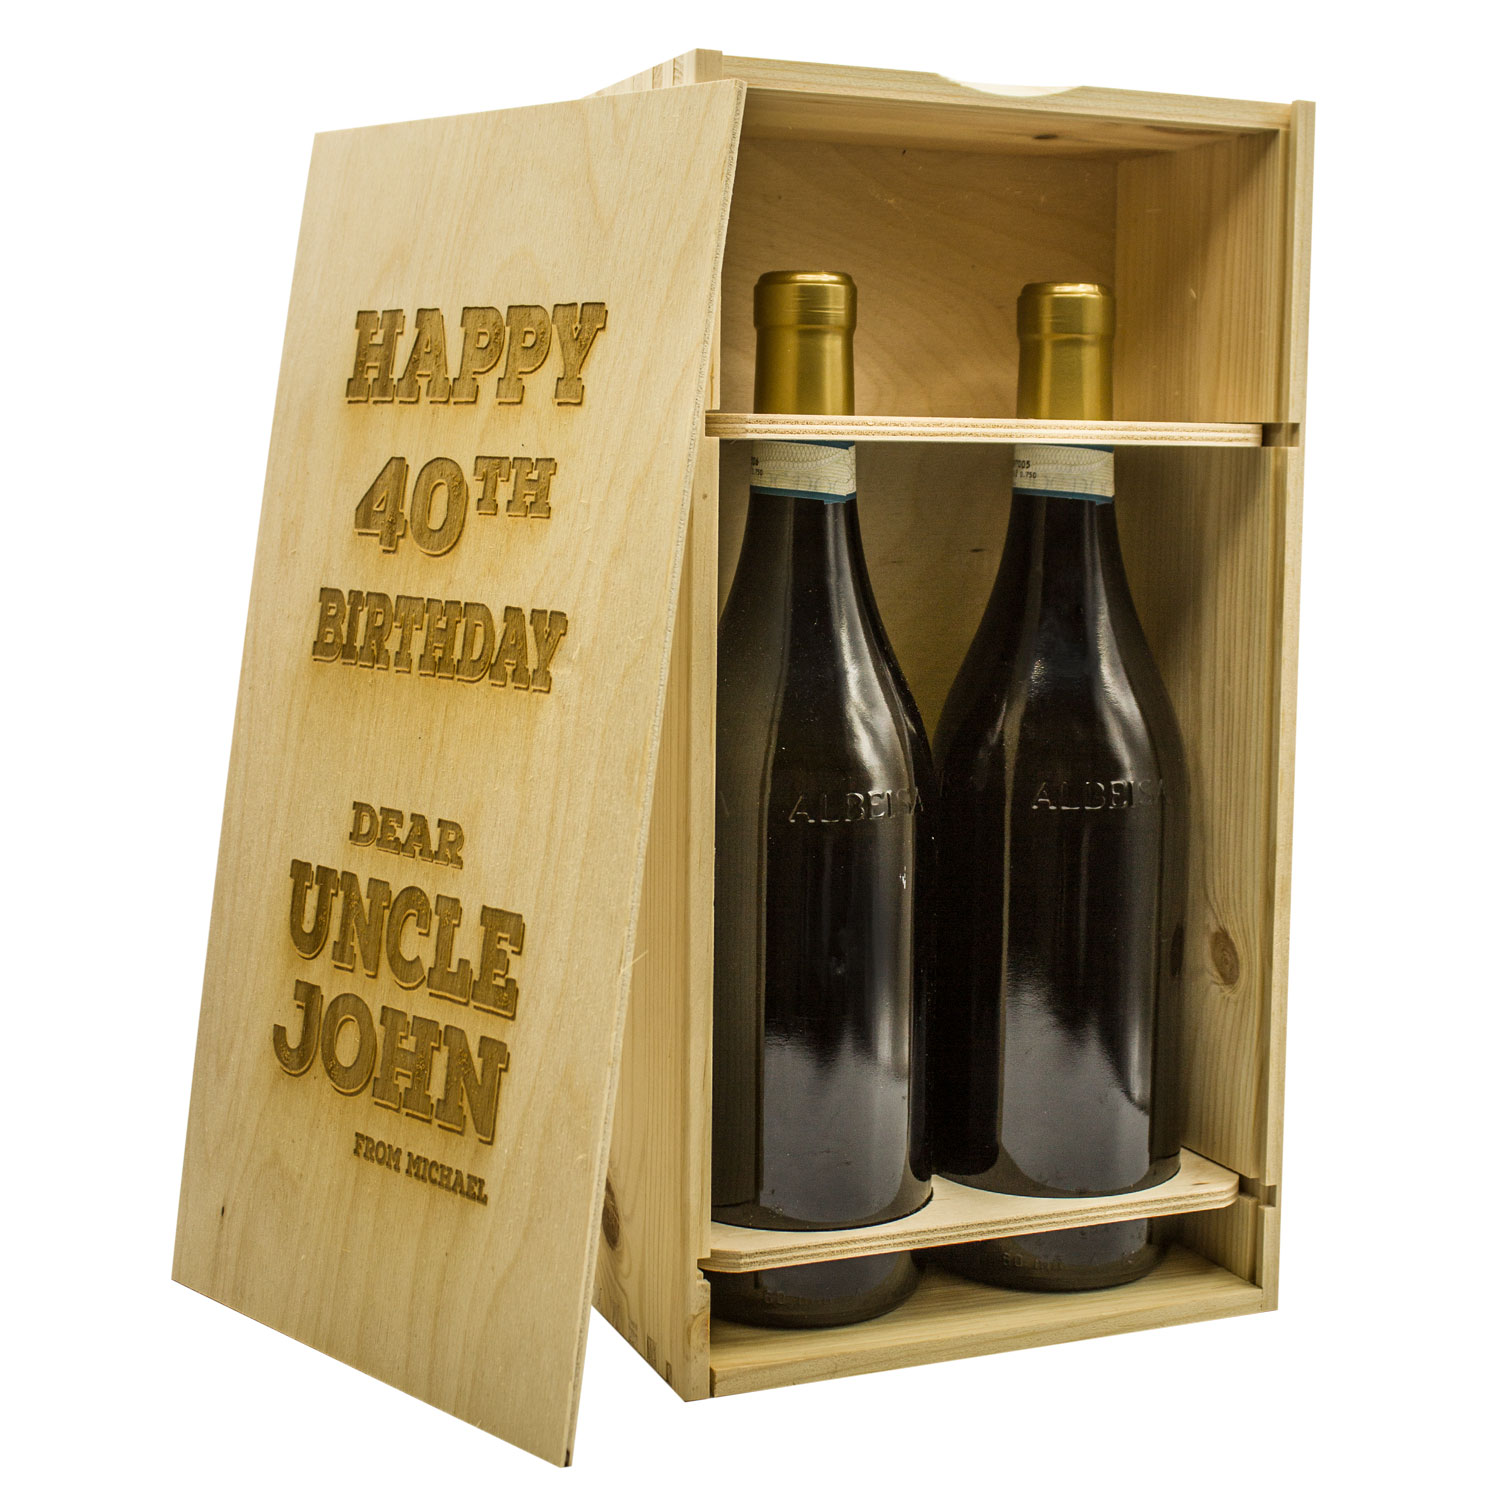 Custom Wood Box for 2 bottles